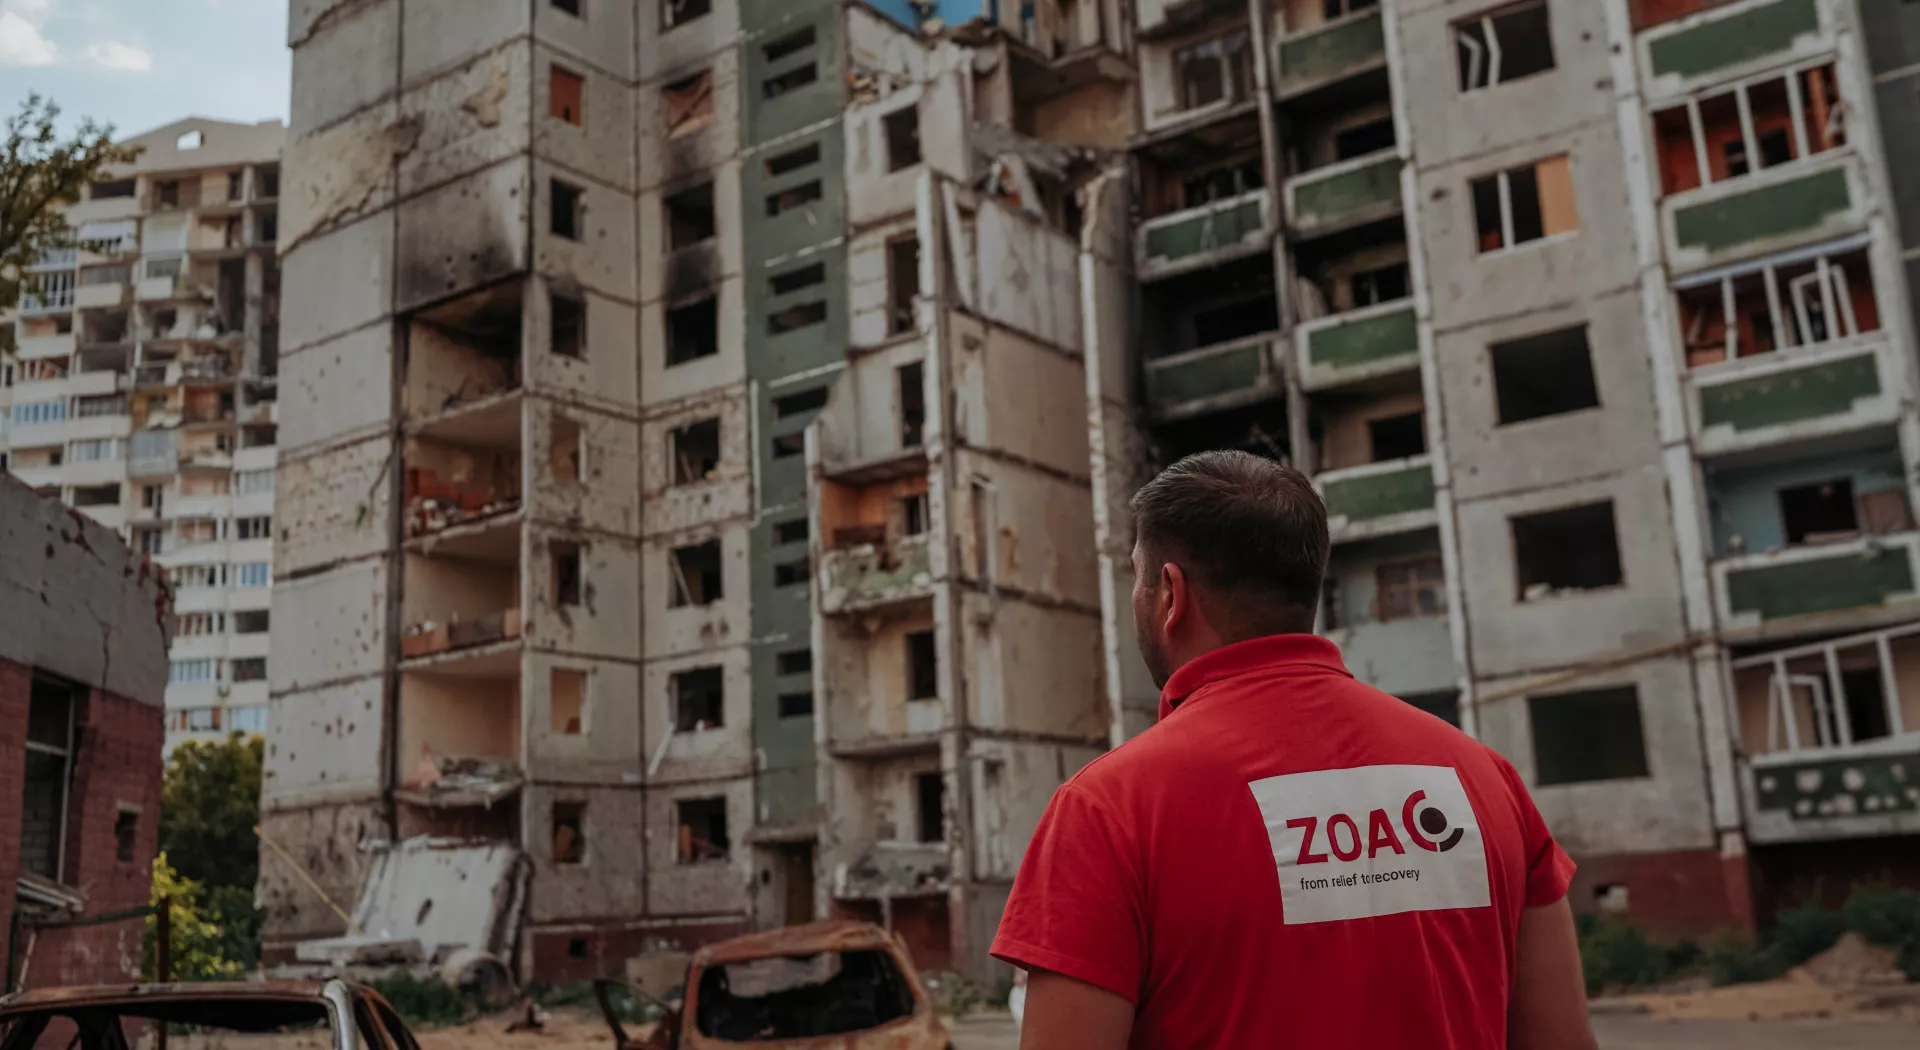 ZOA medewerker kijkt naar kapotte gebouwen